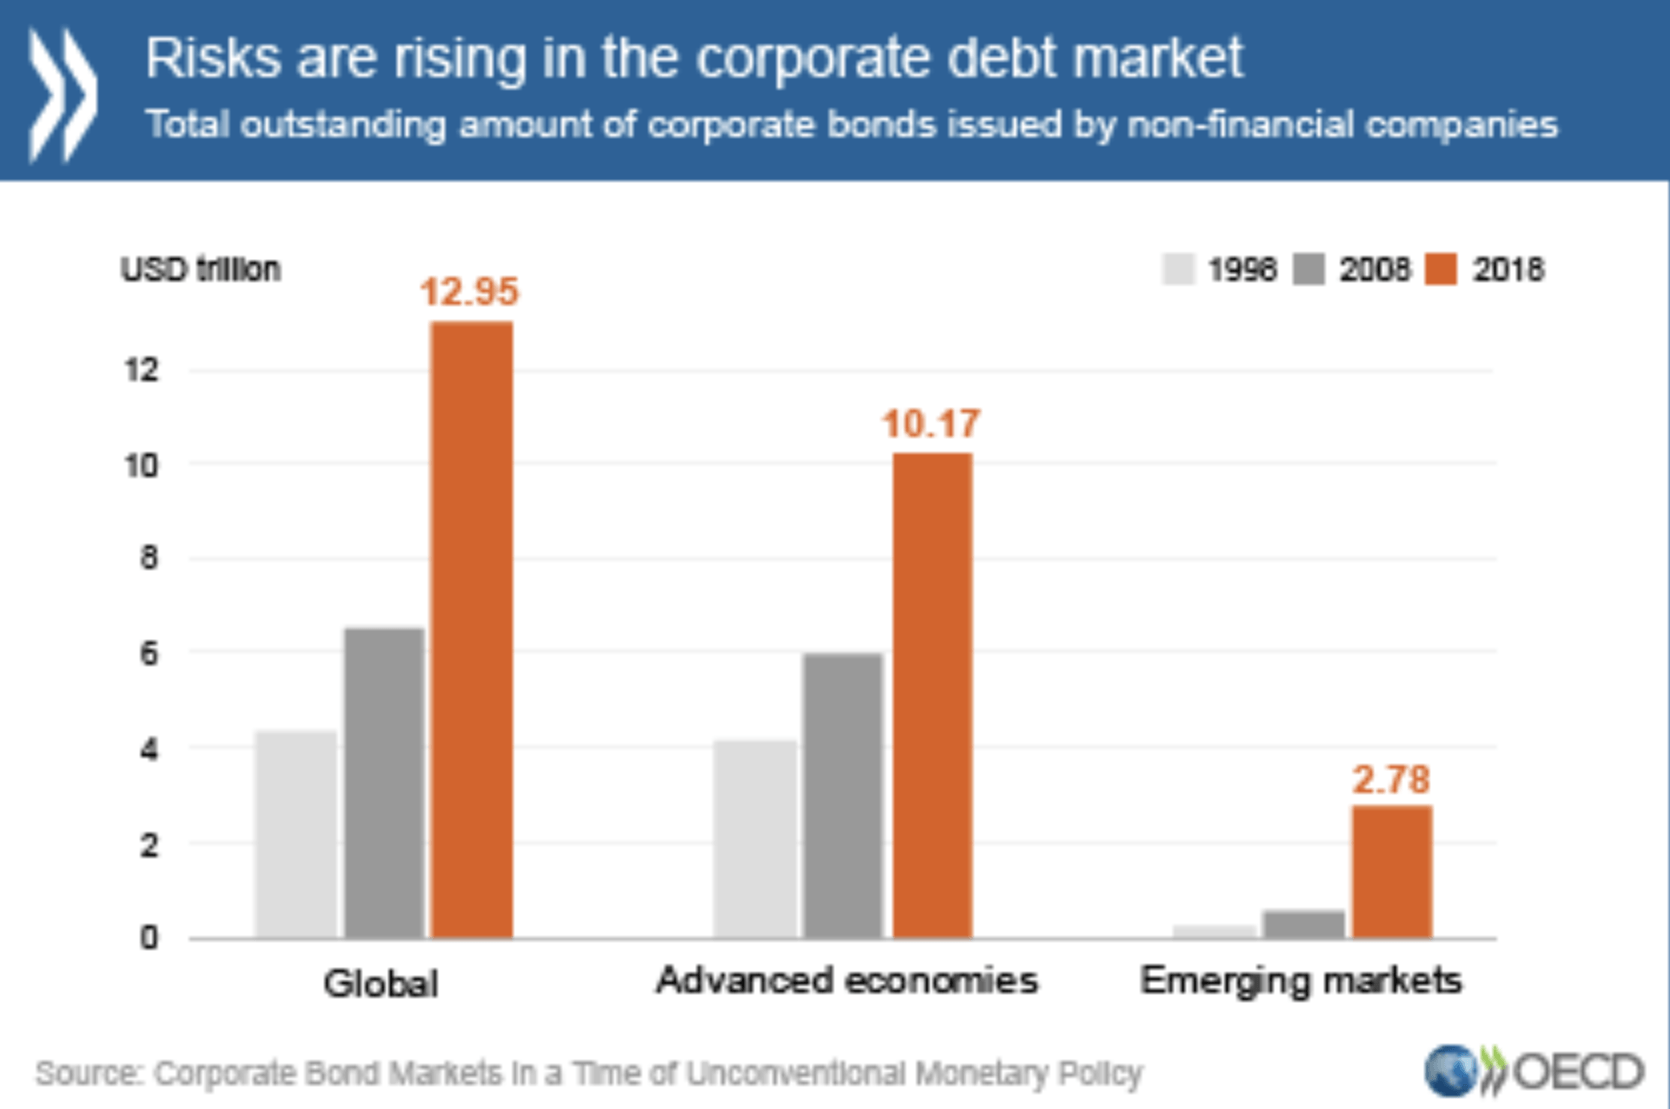 OECD Grafik mit Risiken am Markt für Unternehmenskredite